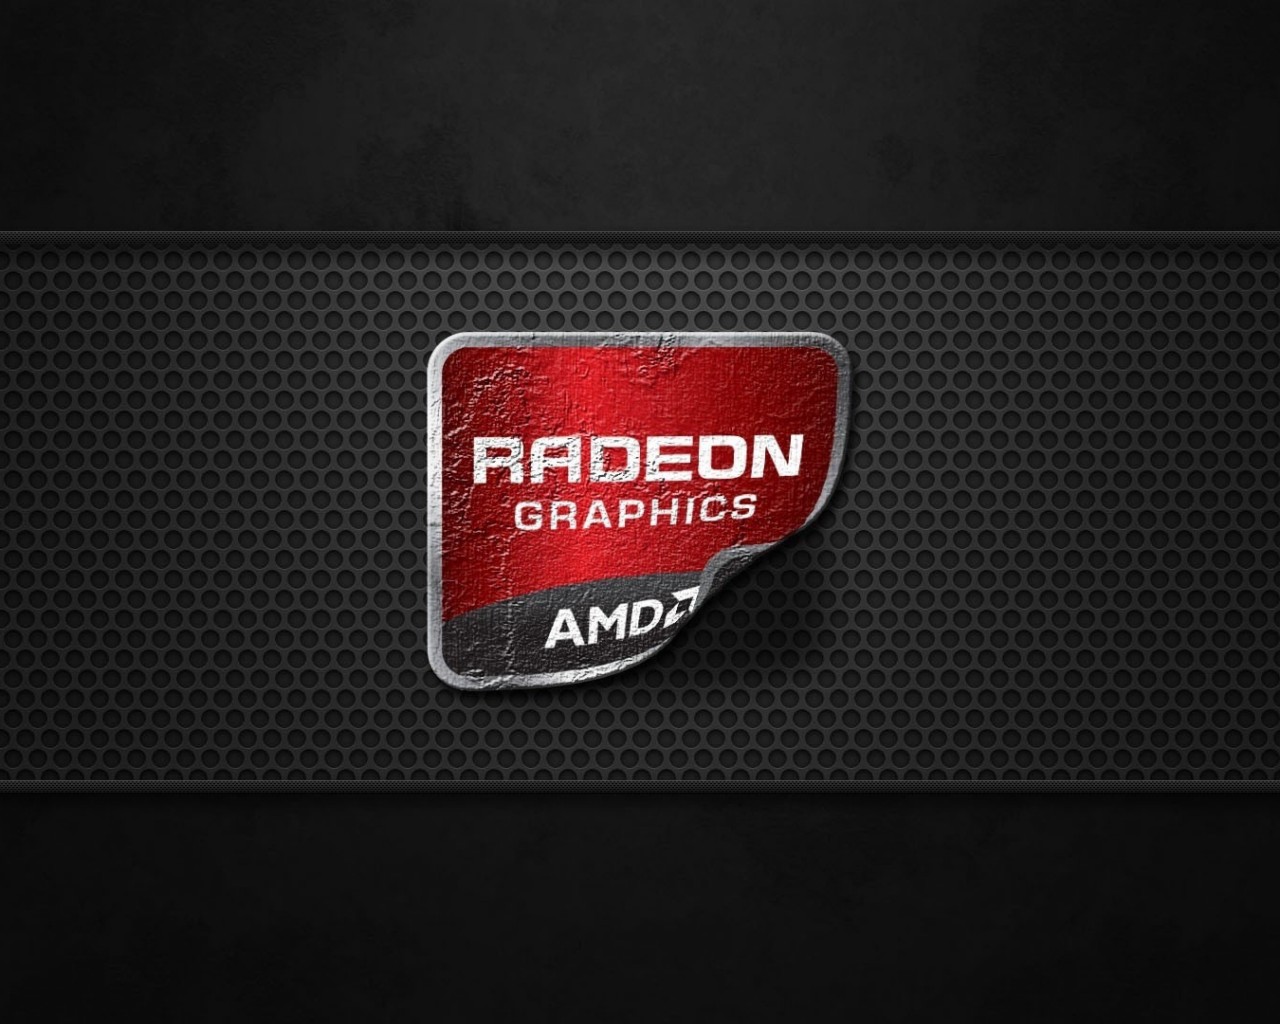 AMD Radeon Graphics Wallpaper for Desktop 1280x1024